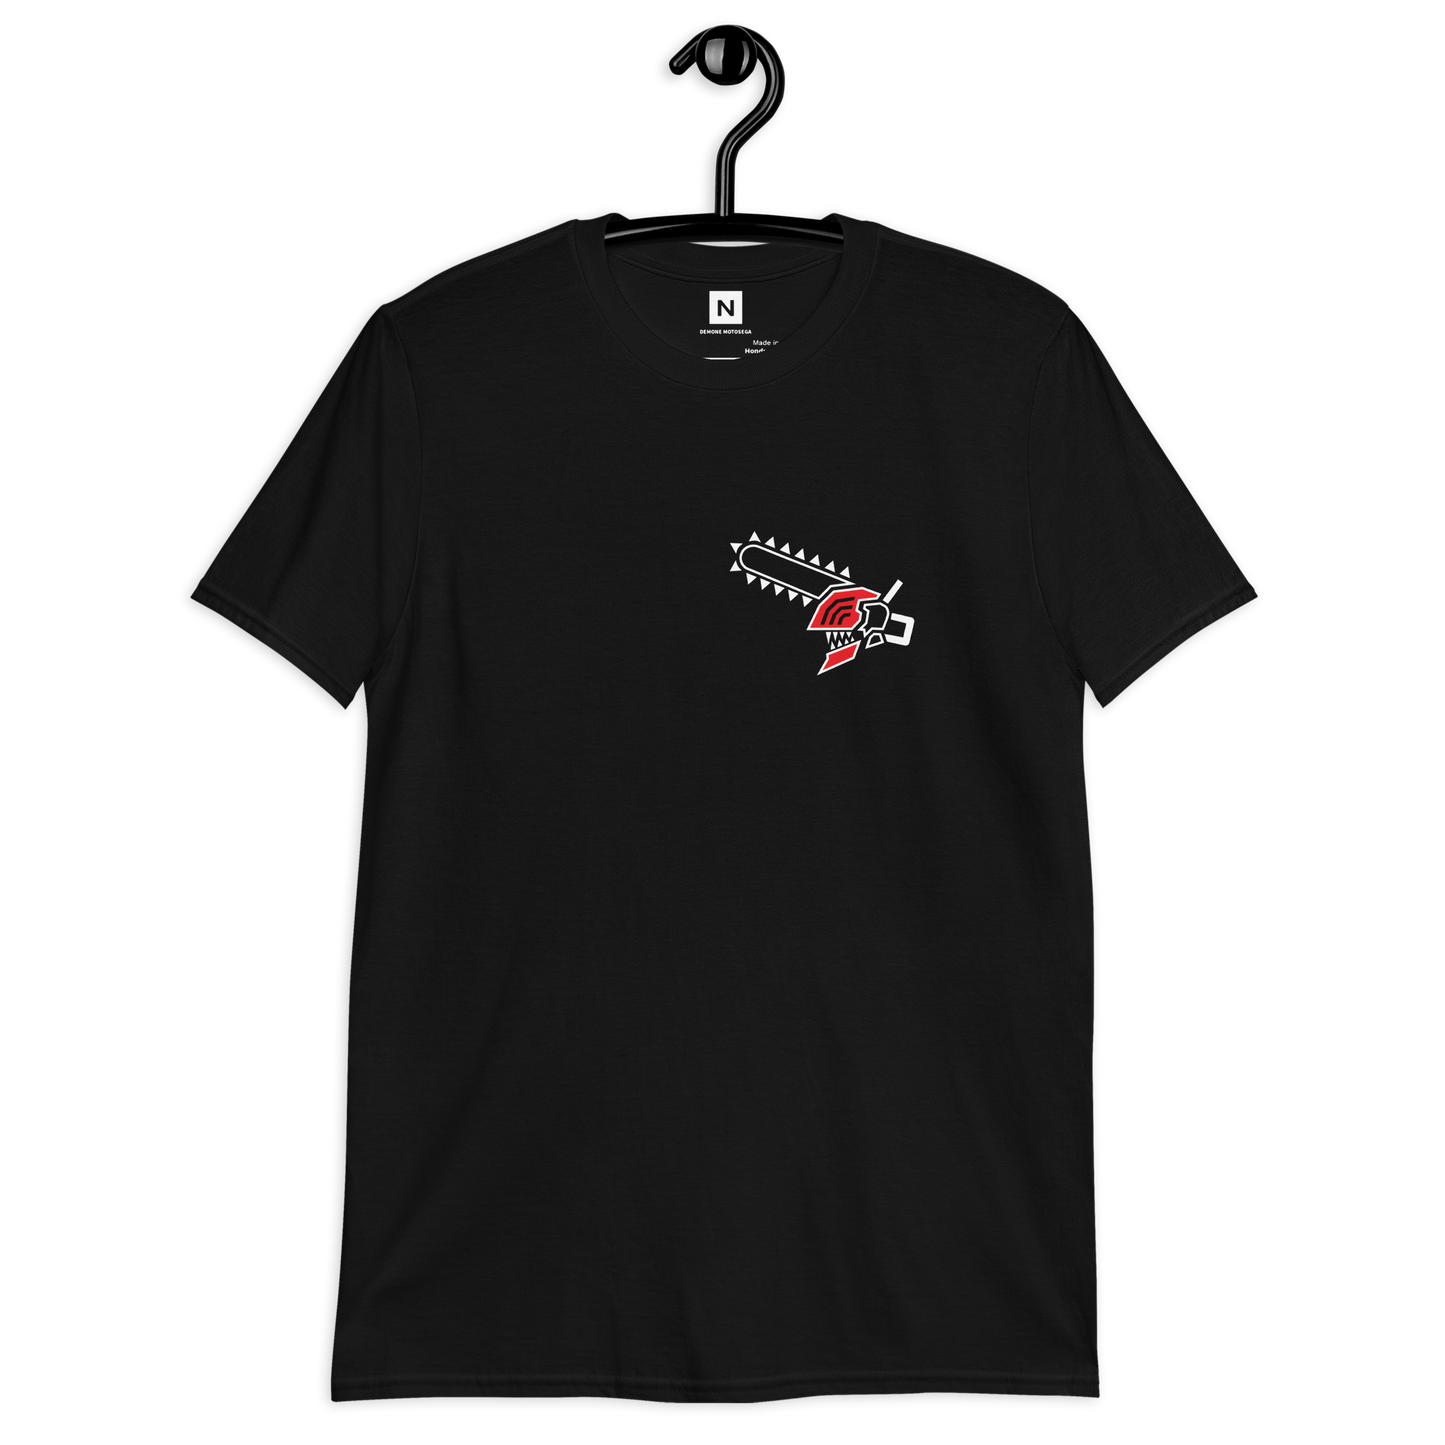 Demone Motosega | T-shirt Minimal BN | Unisex